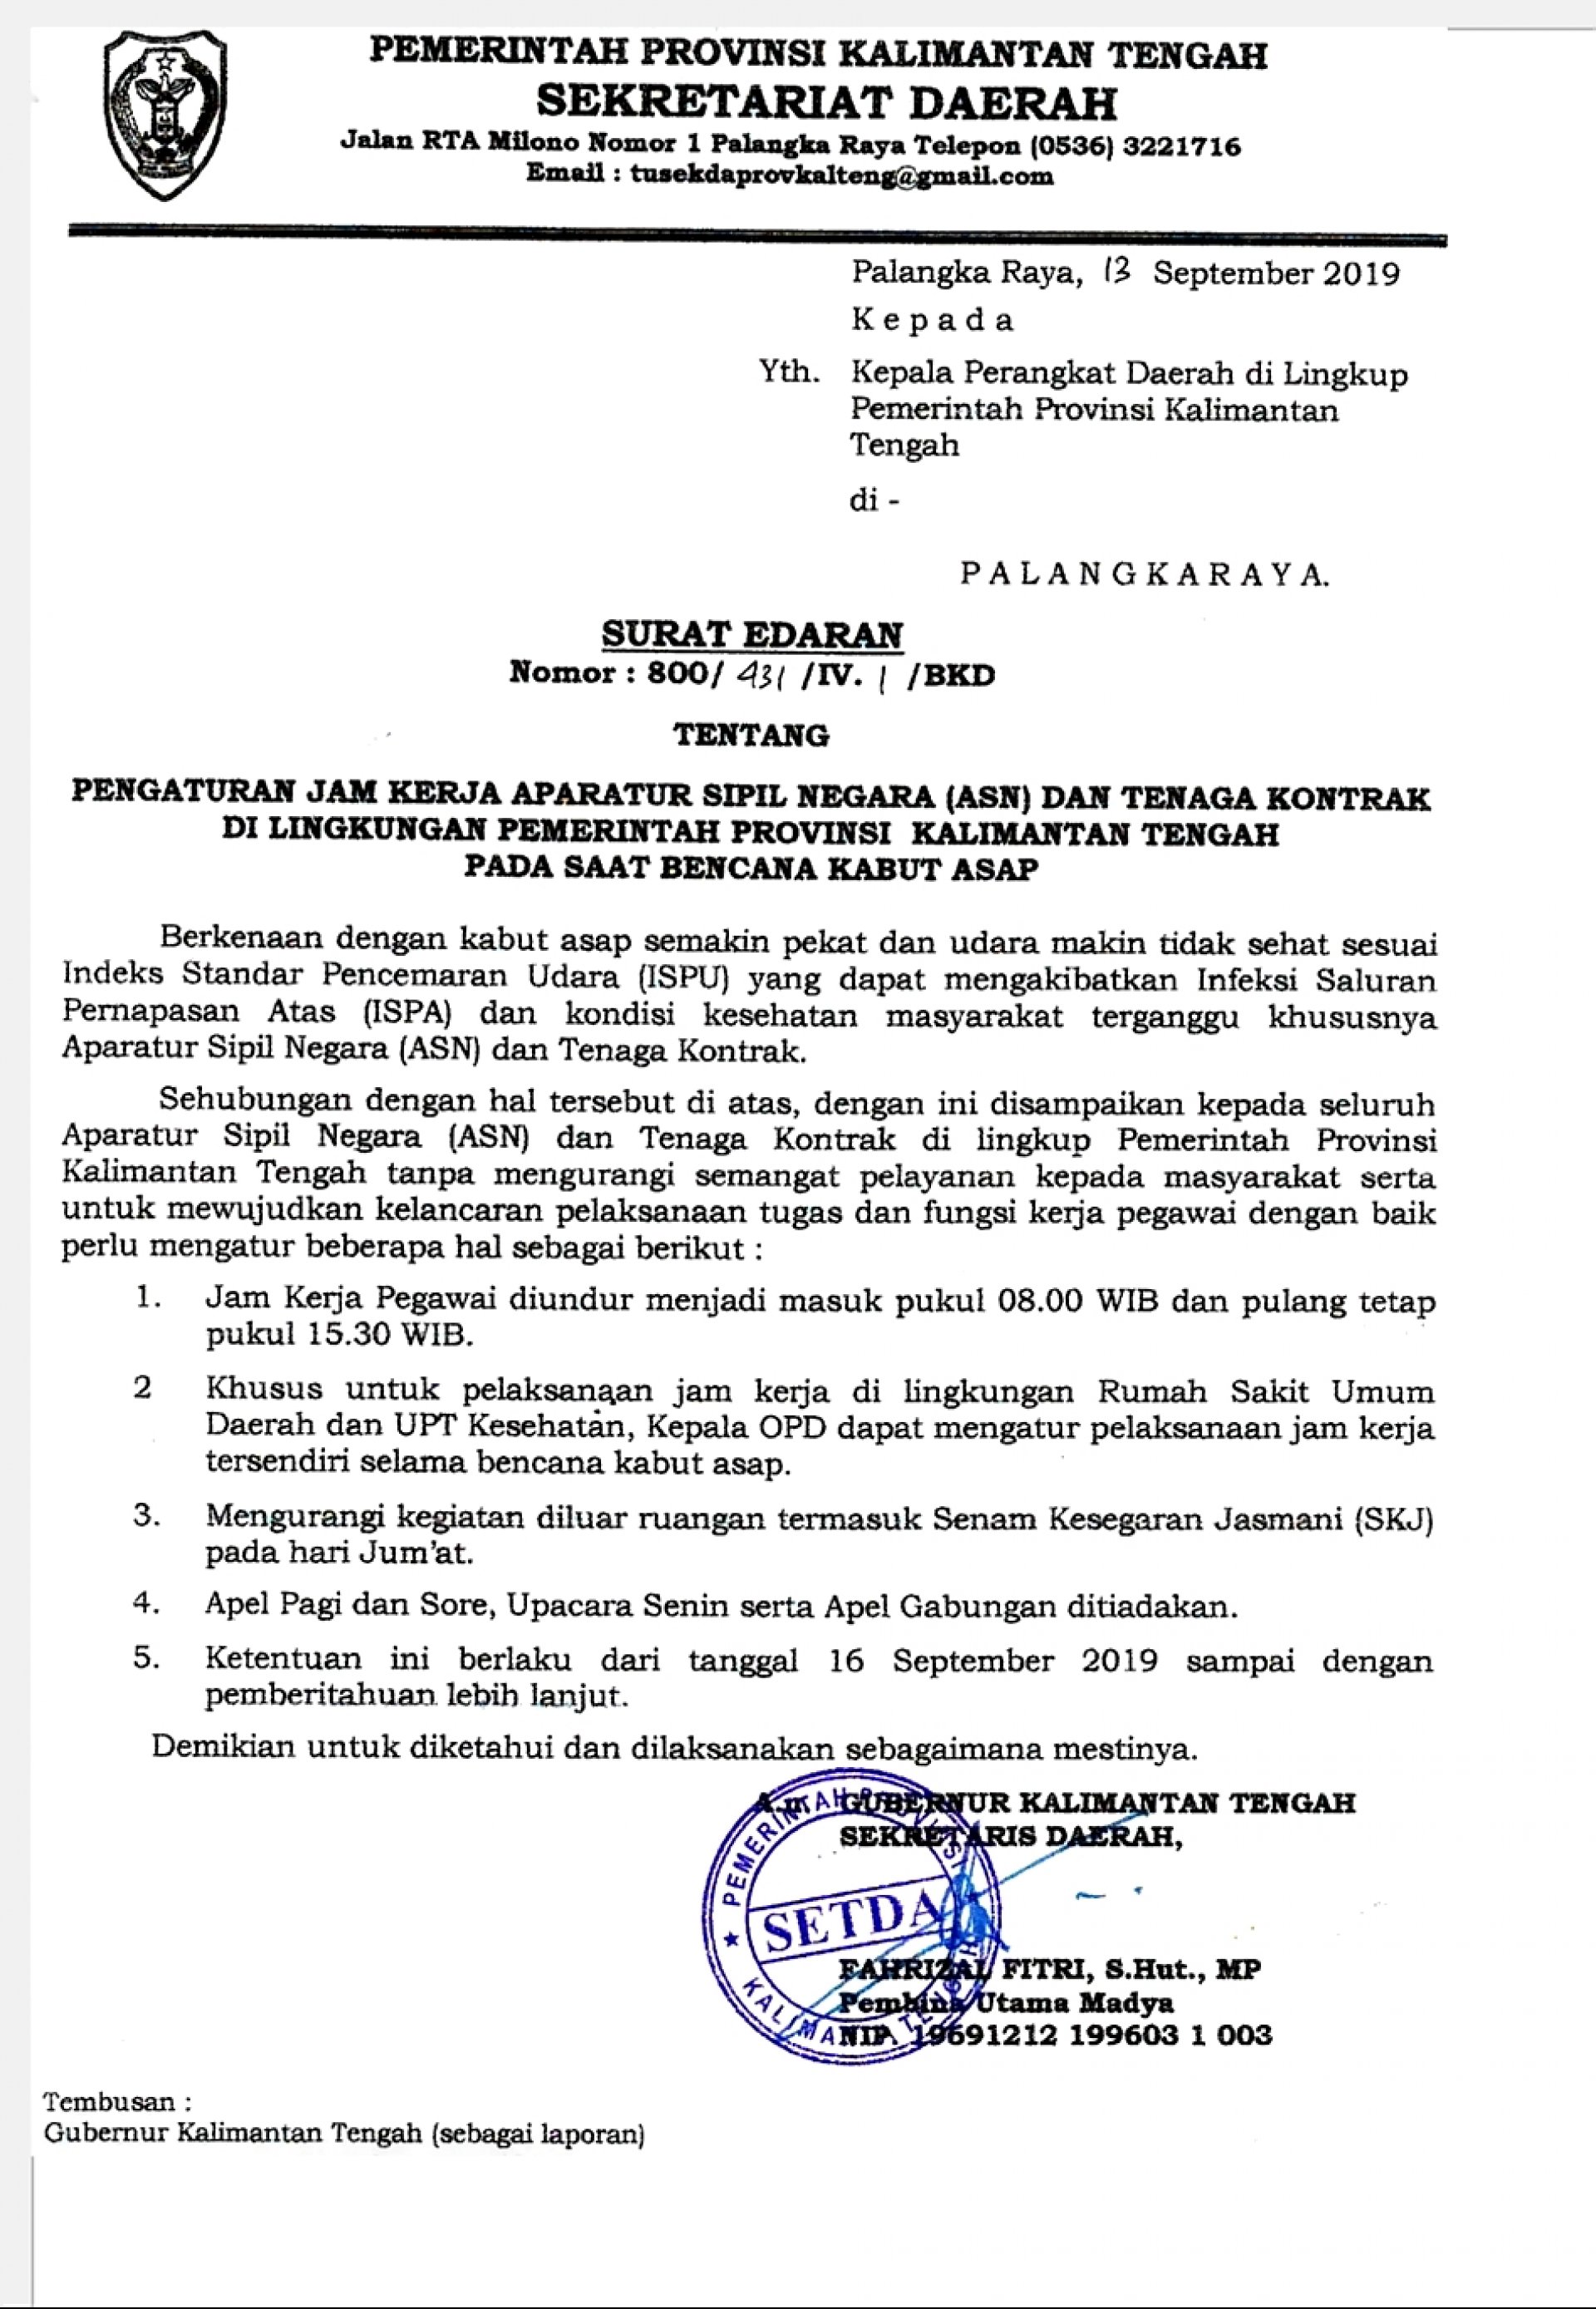 Surat Edaran Sekretaris Daerah Nomor: 800/431/IV/BKD Tentang Pengaturan Jam Kerja ASN dan Tekon di Lingkungan Pemerintah Provinsi Kalimantan Tengah  pada Saat Bencana Kabut Asap